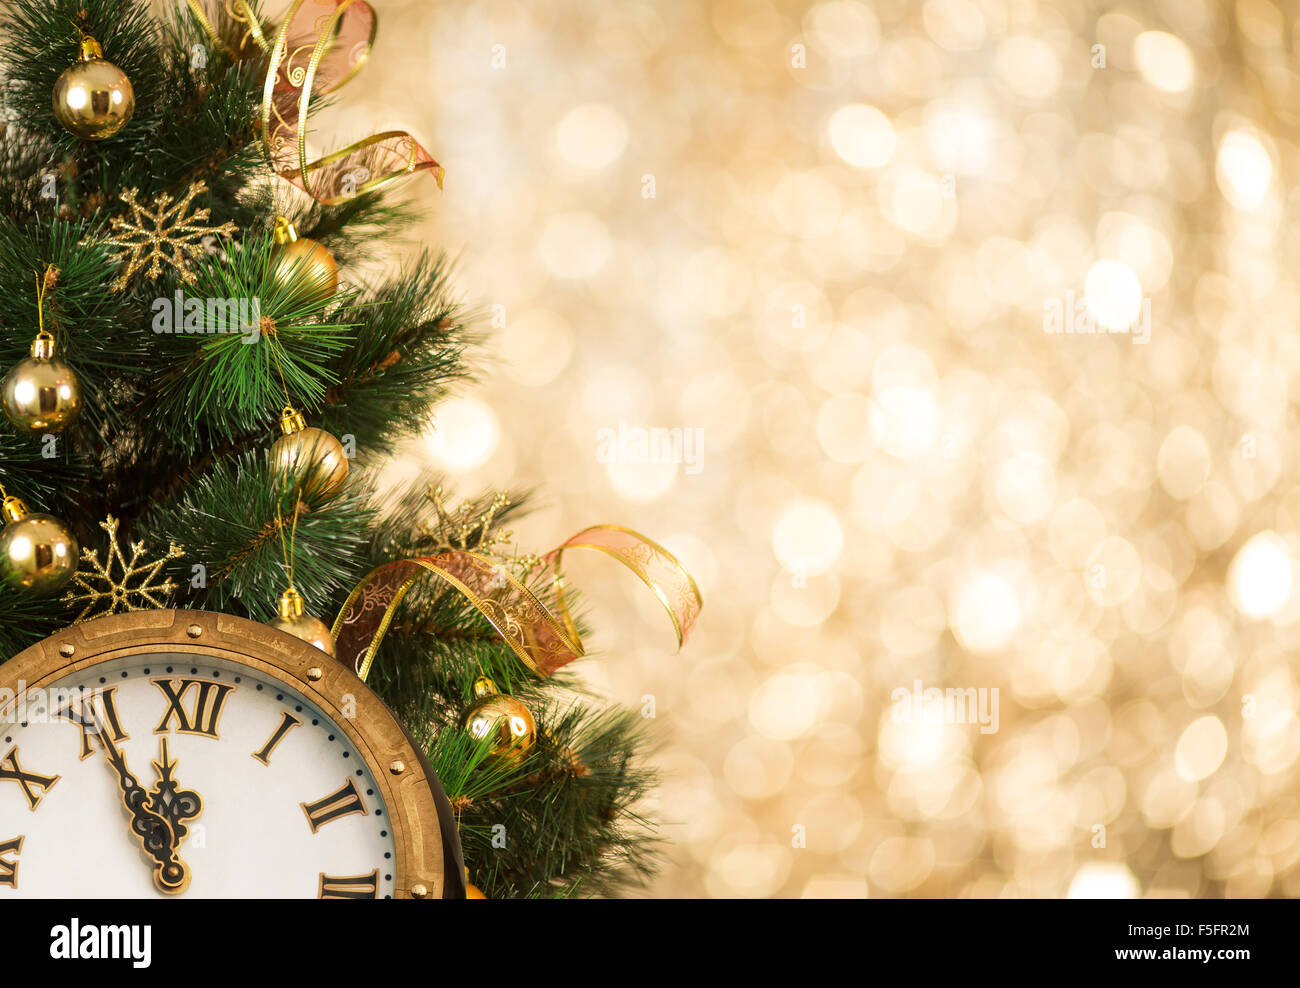 Weihnachtsbaum mit Retro-Ziffernblatt Stockfoto